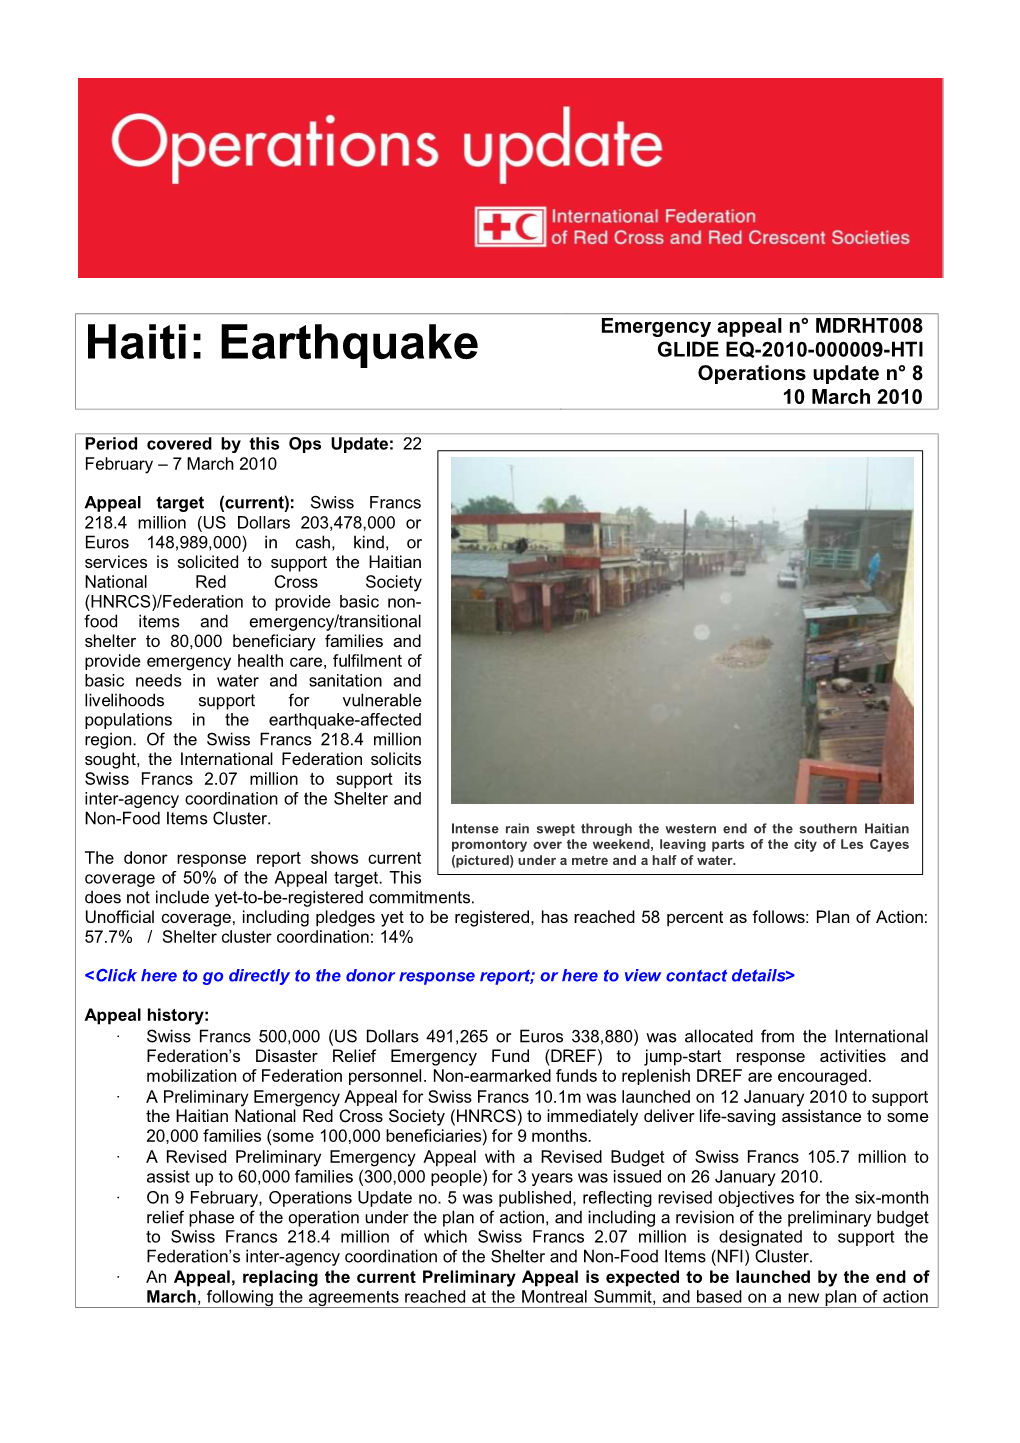 Haiti: Earthquake GLIDE EQ-2010-000009-HTI Operations Update N° 8 10 March 2010